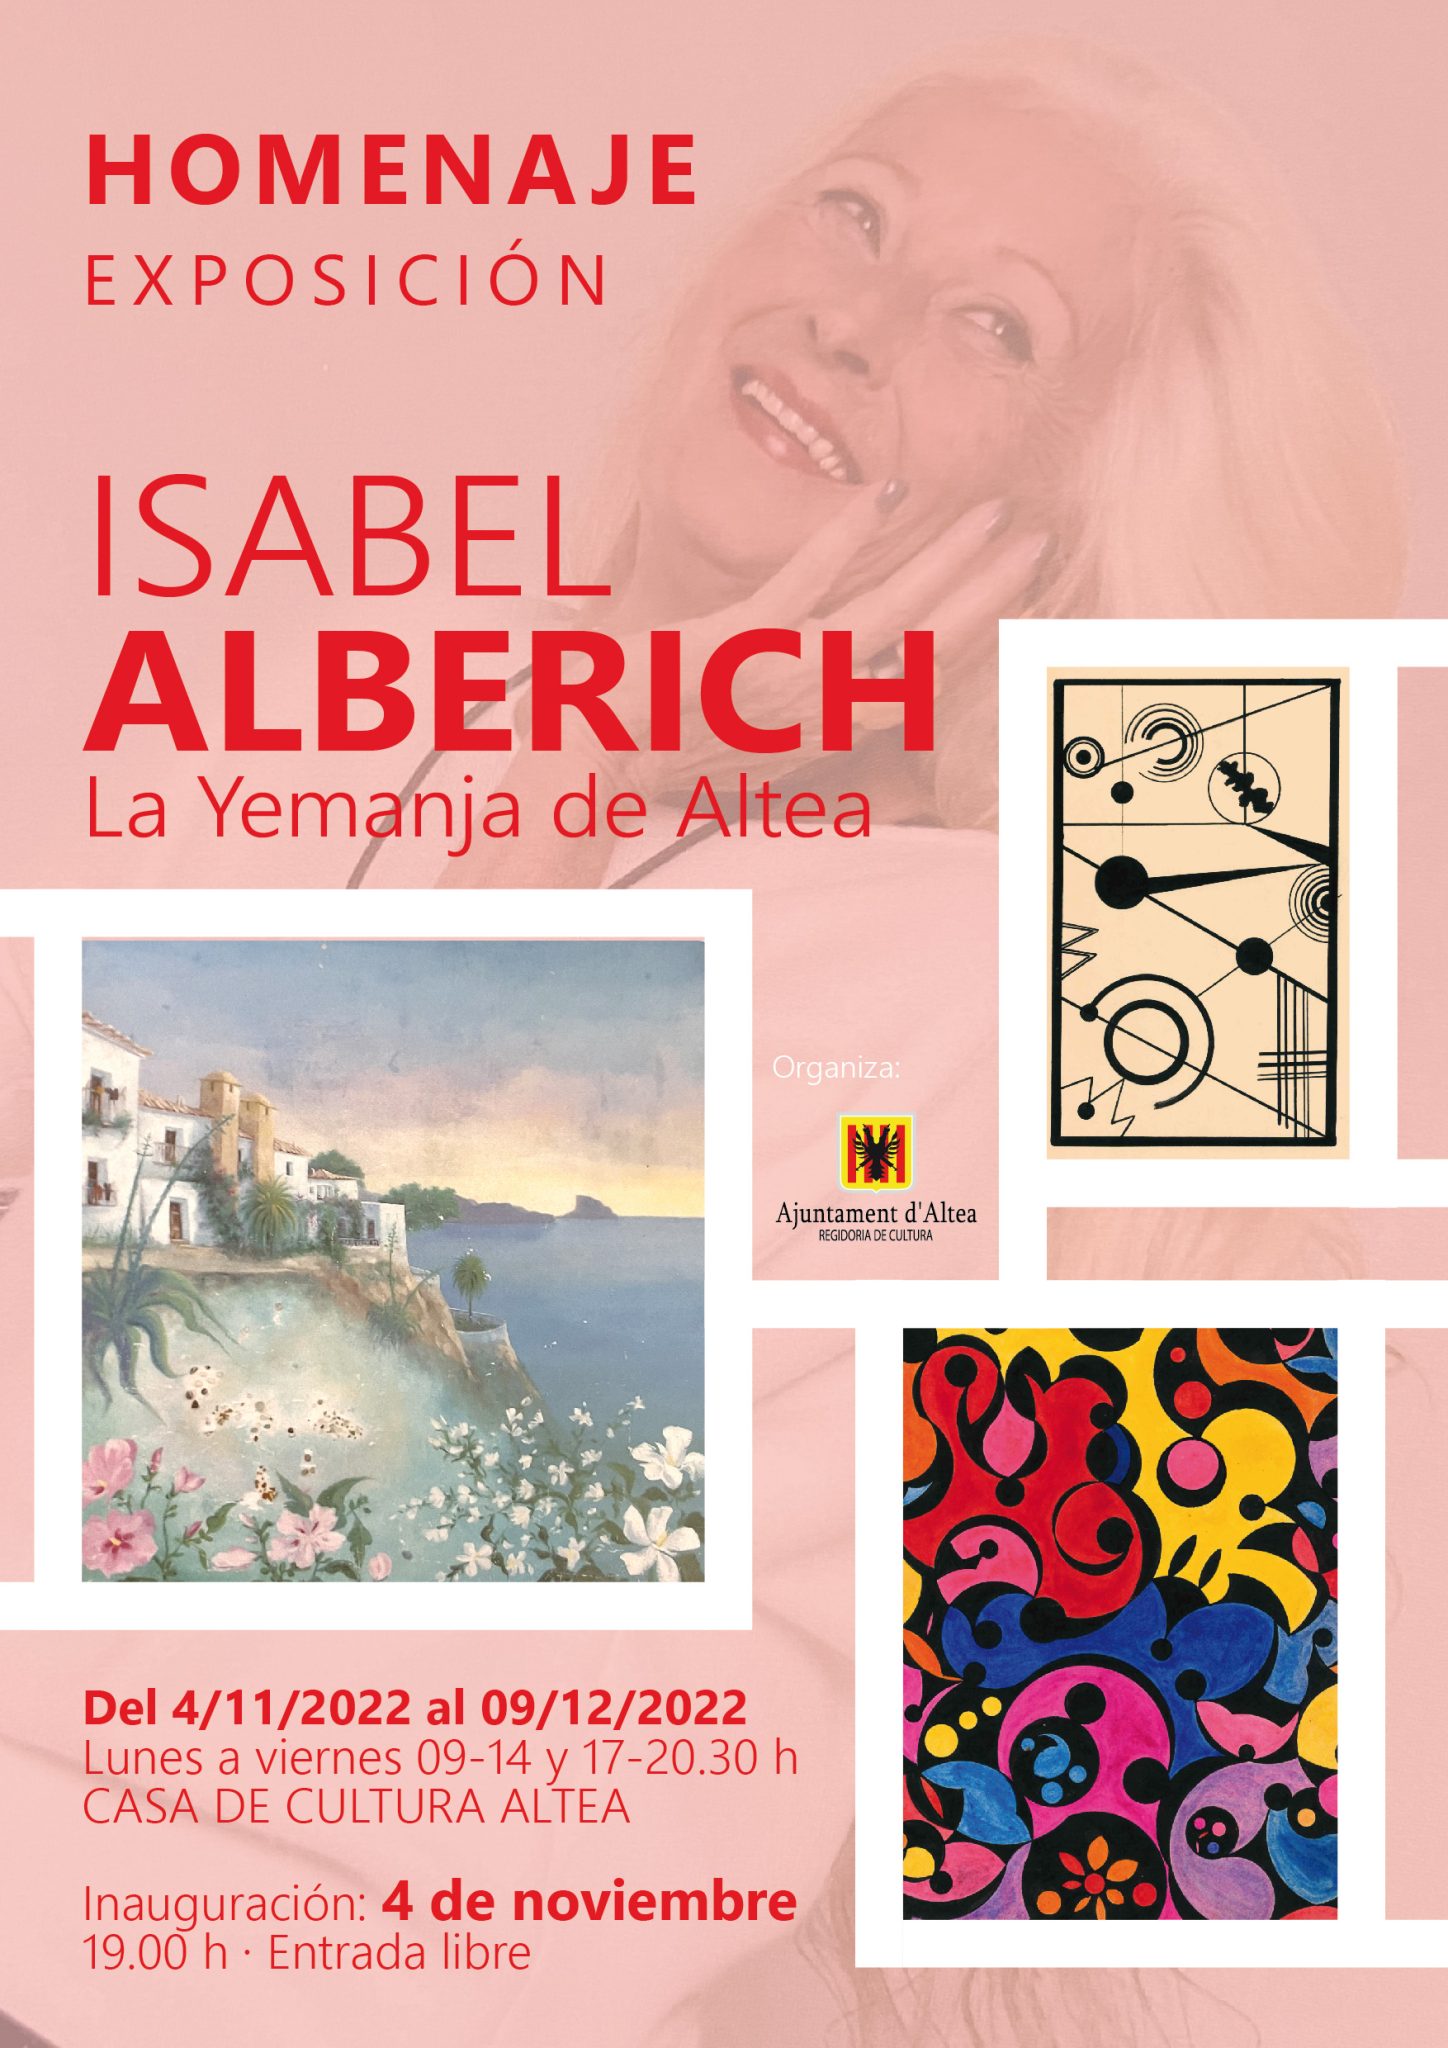 Altea homenatja l’artista Isabel Alberich amb una exposició